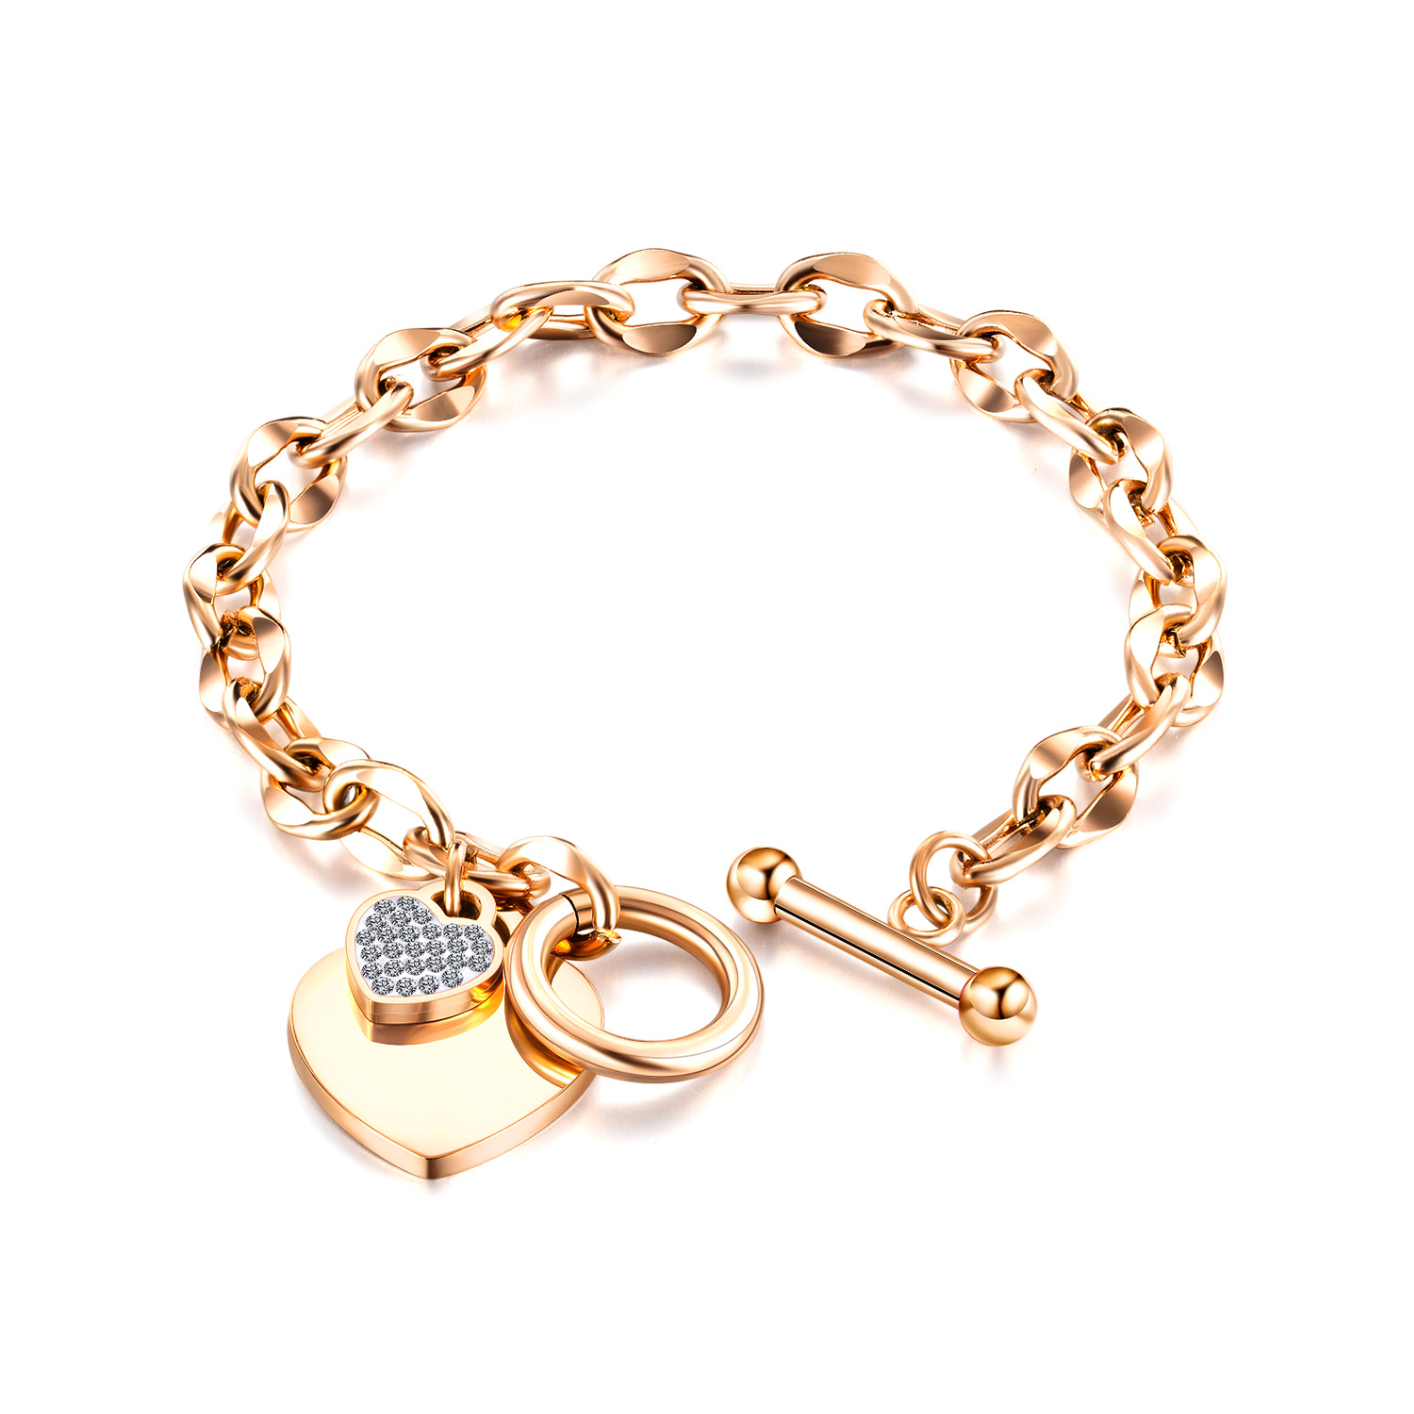 1012 Stainless Steel Love Heart Charm Bracelet for Women Teen Girls Romantic Gift Silver/Rose/18k Gold Plated OT Clasp Bracelets